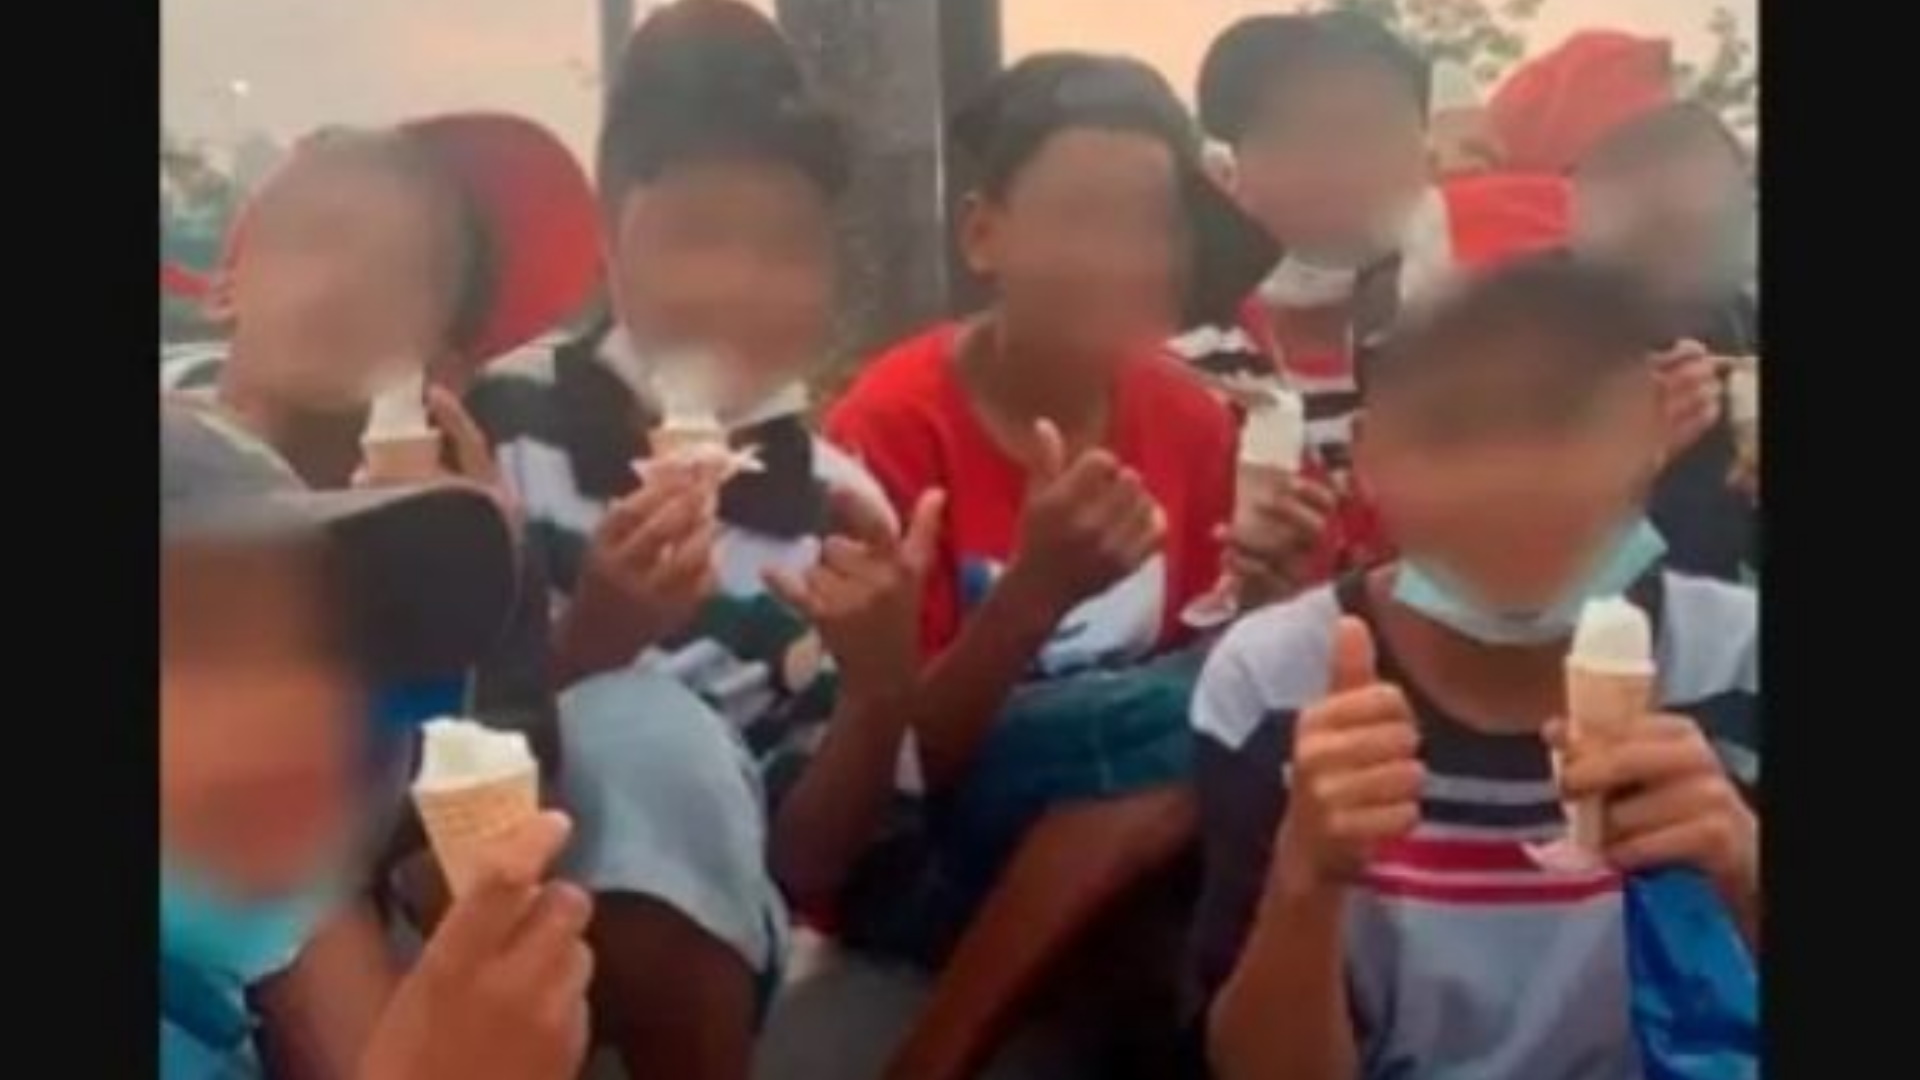 Crianças negras barradas no Playcenter, ato foi classificado como racismo